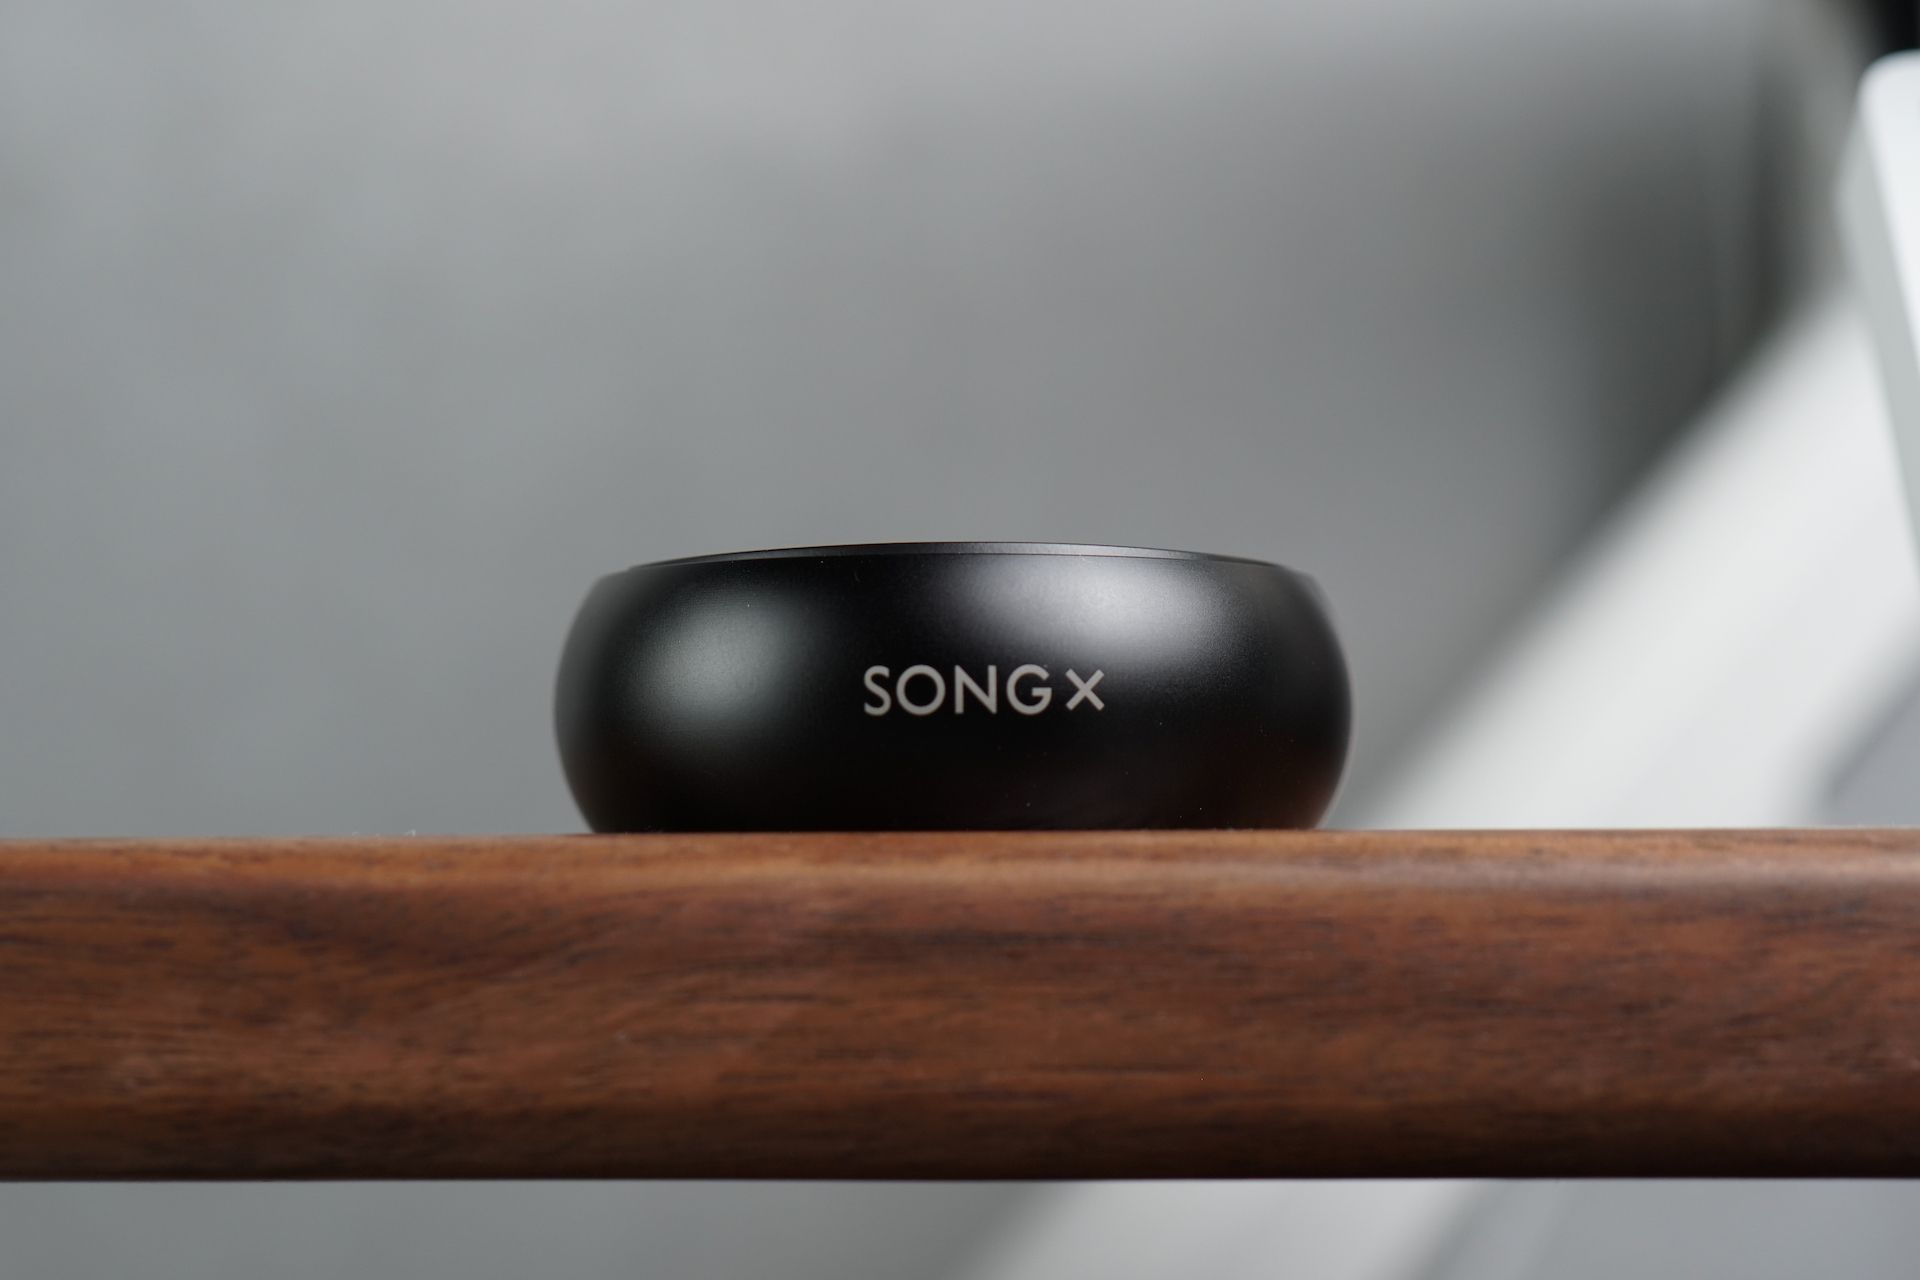 Bộ ảnh tai nghe TWS SongX màu đen với thiết kế đến từ tương lai